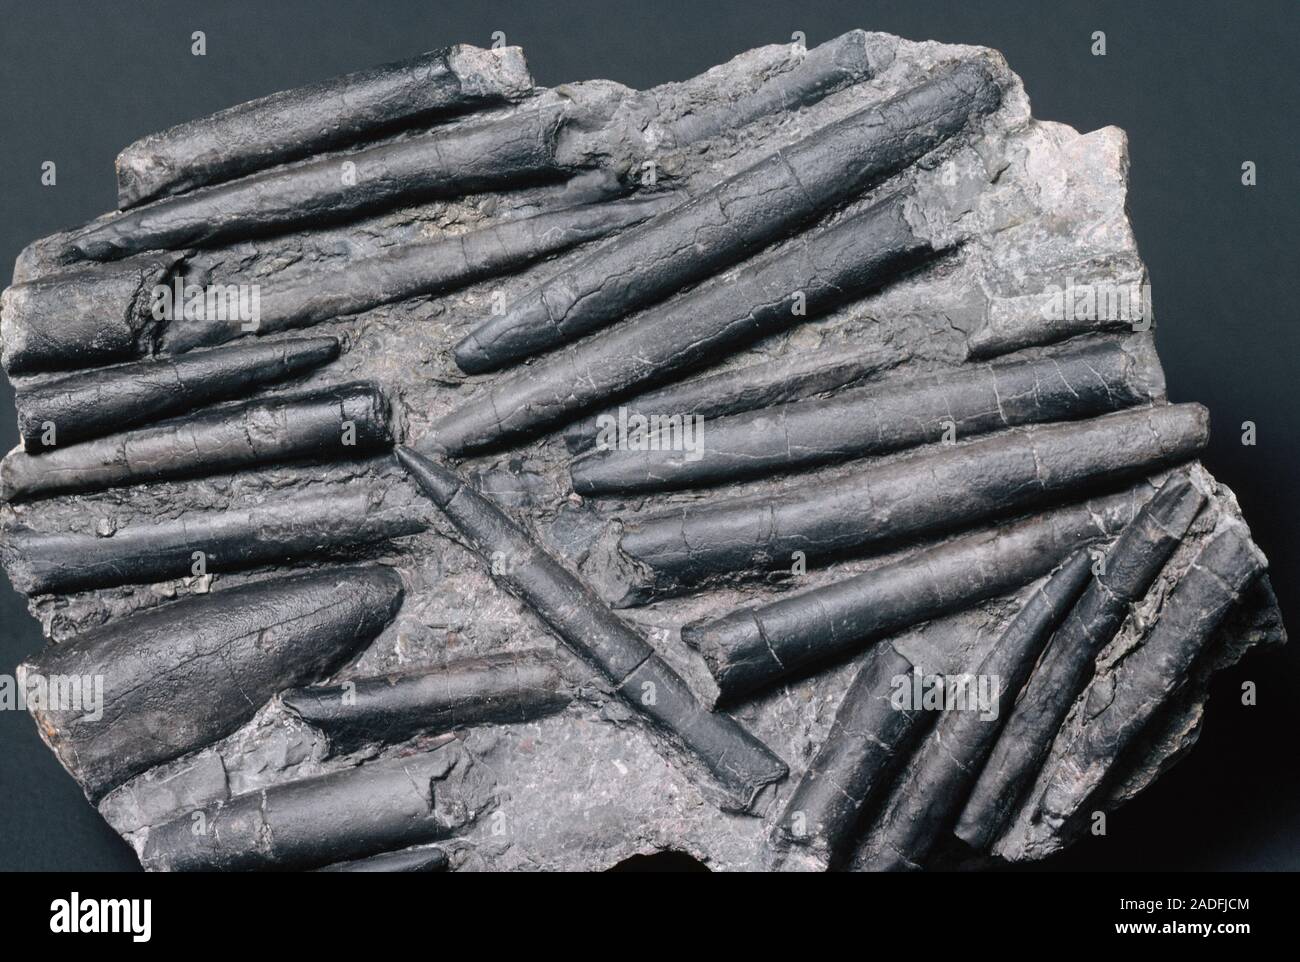 Belemnite Fossilien. Belemniten sind eine ausgestorbene Gruppe von Muscheln, die gedacht werden zu modernen Kopffüßer wie Kraken, Kalmare und cuttlef bezogen zu werden Stockfoto